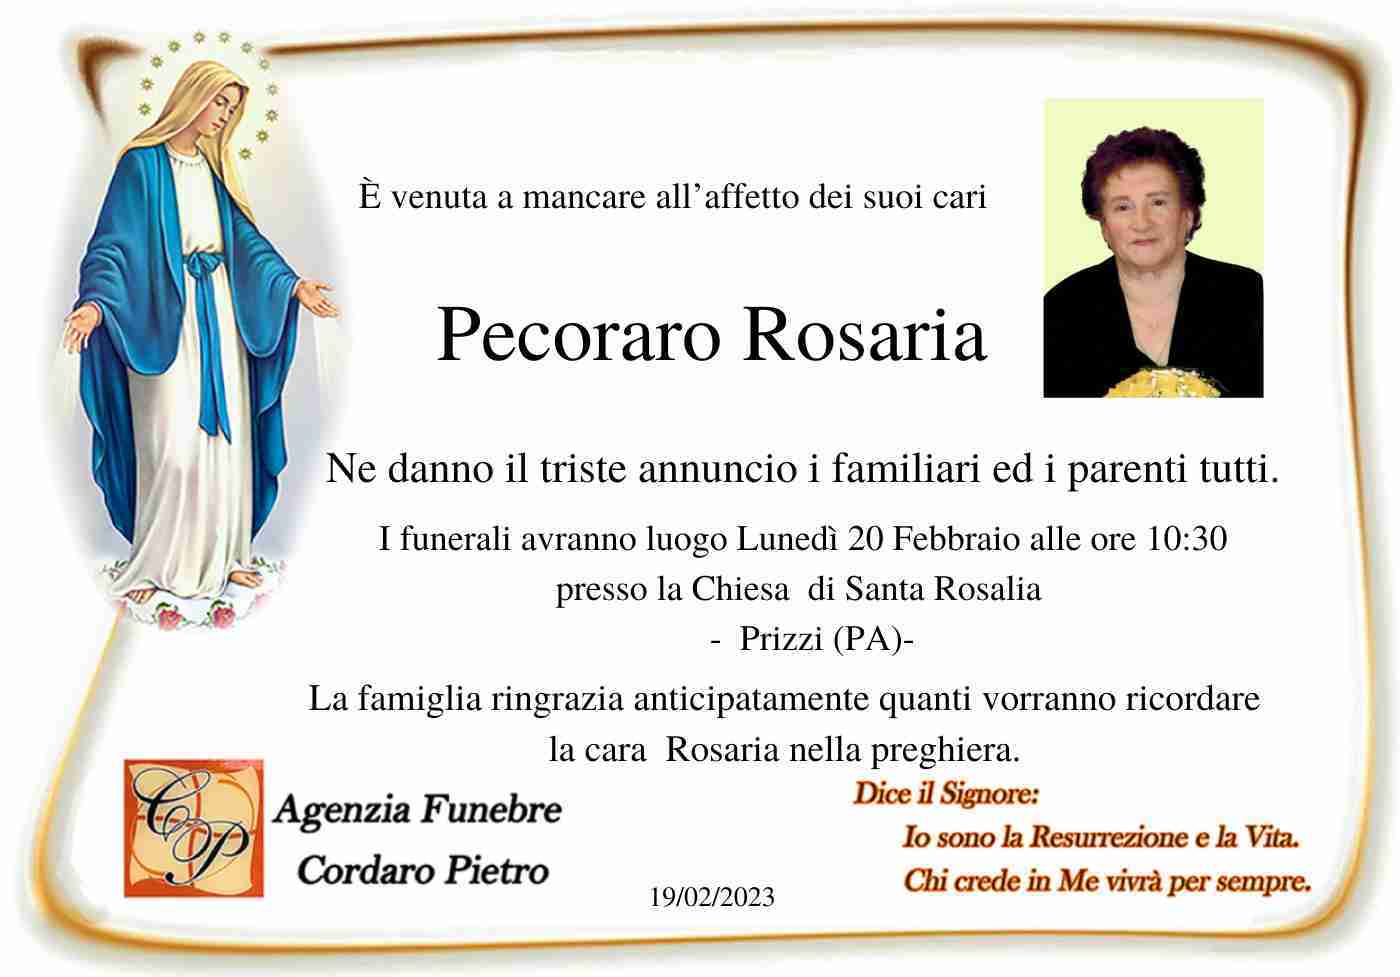 Rosaria Pecoraro